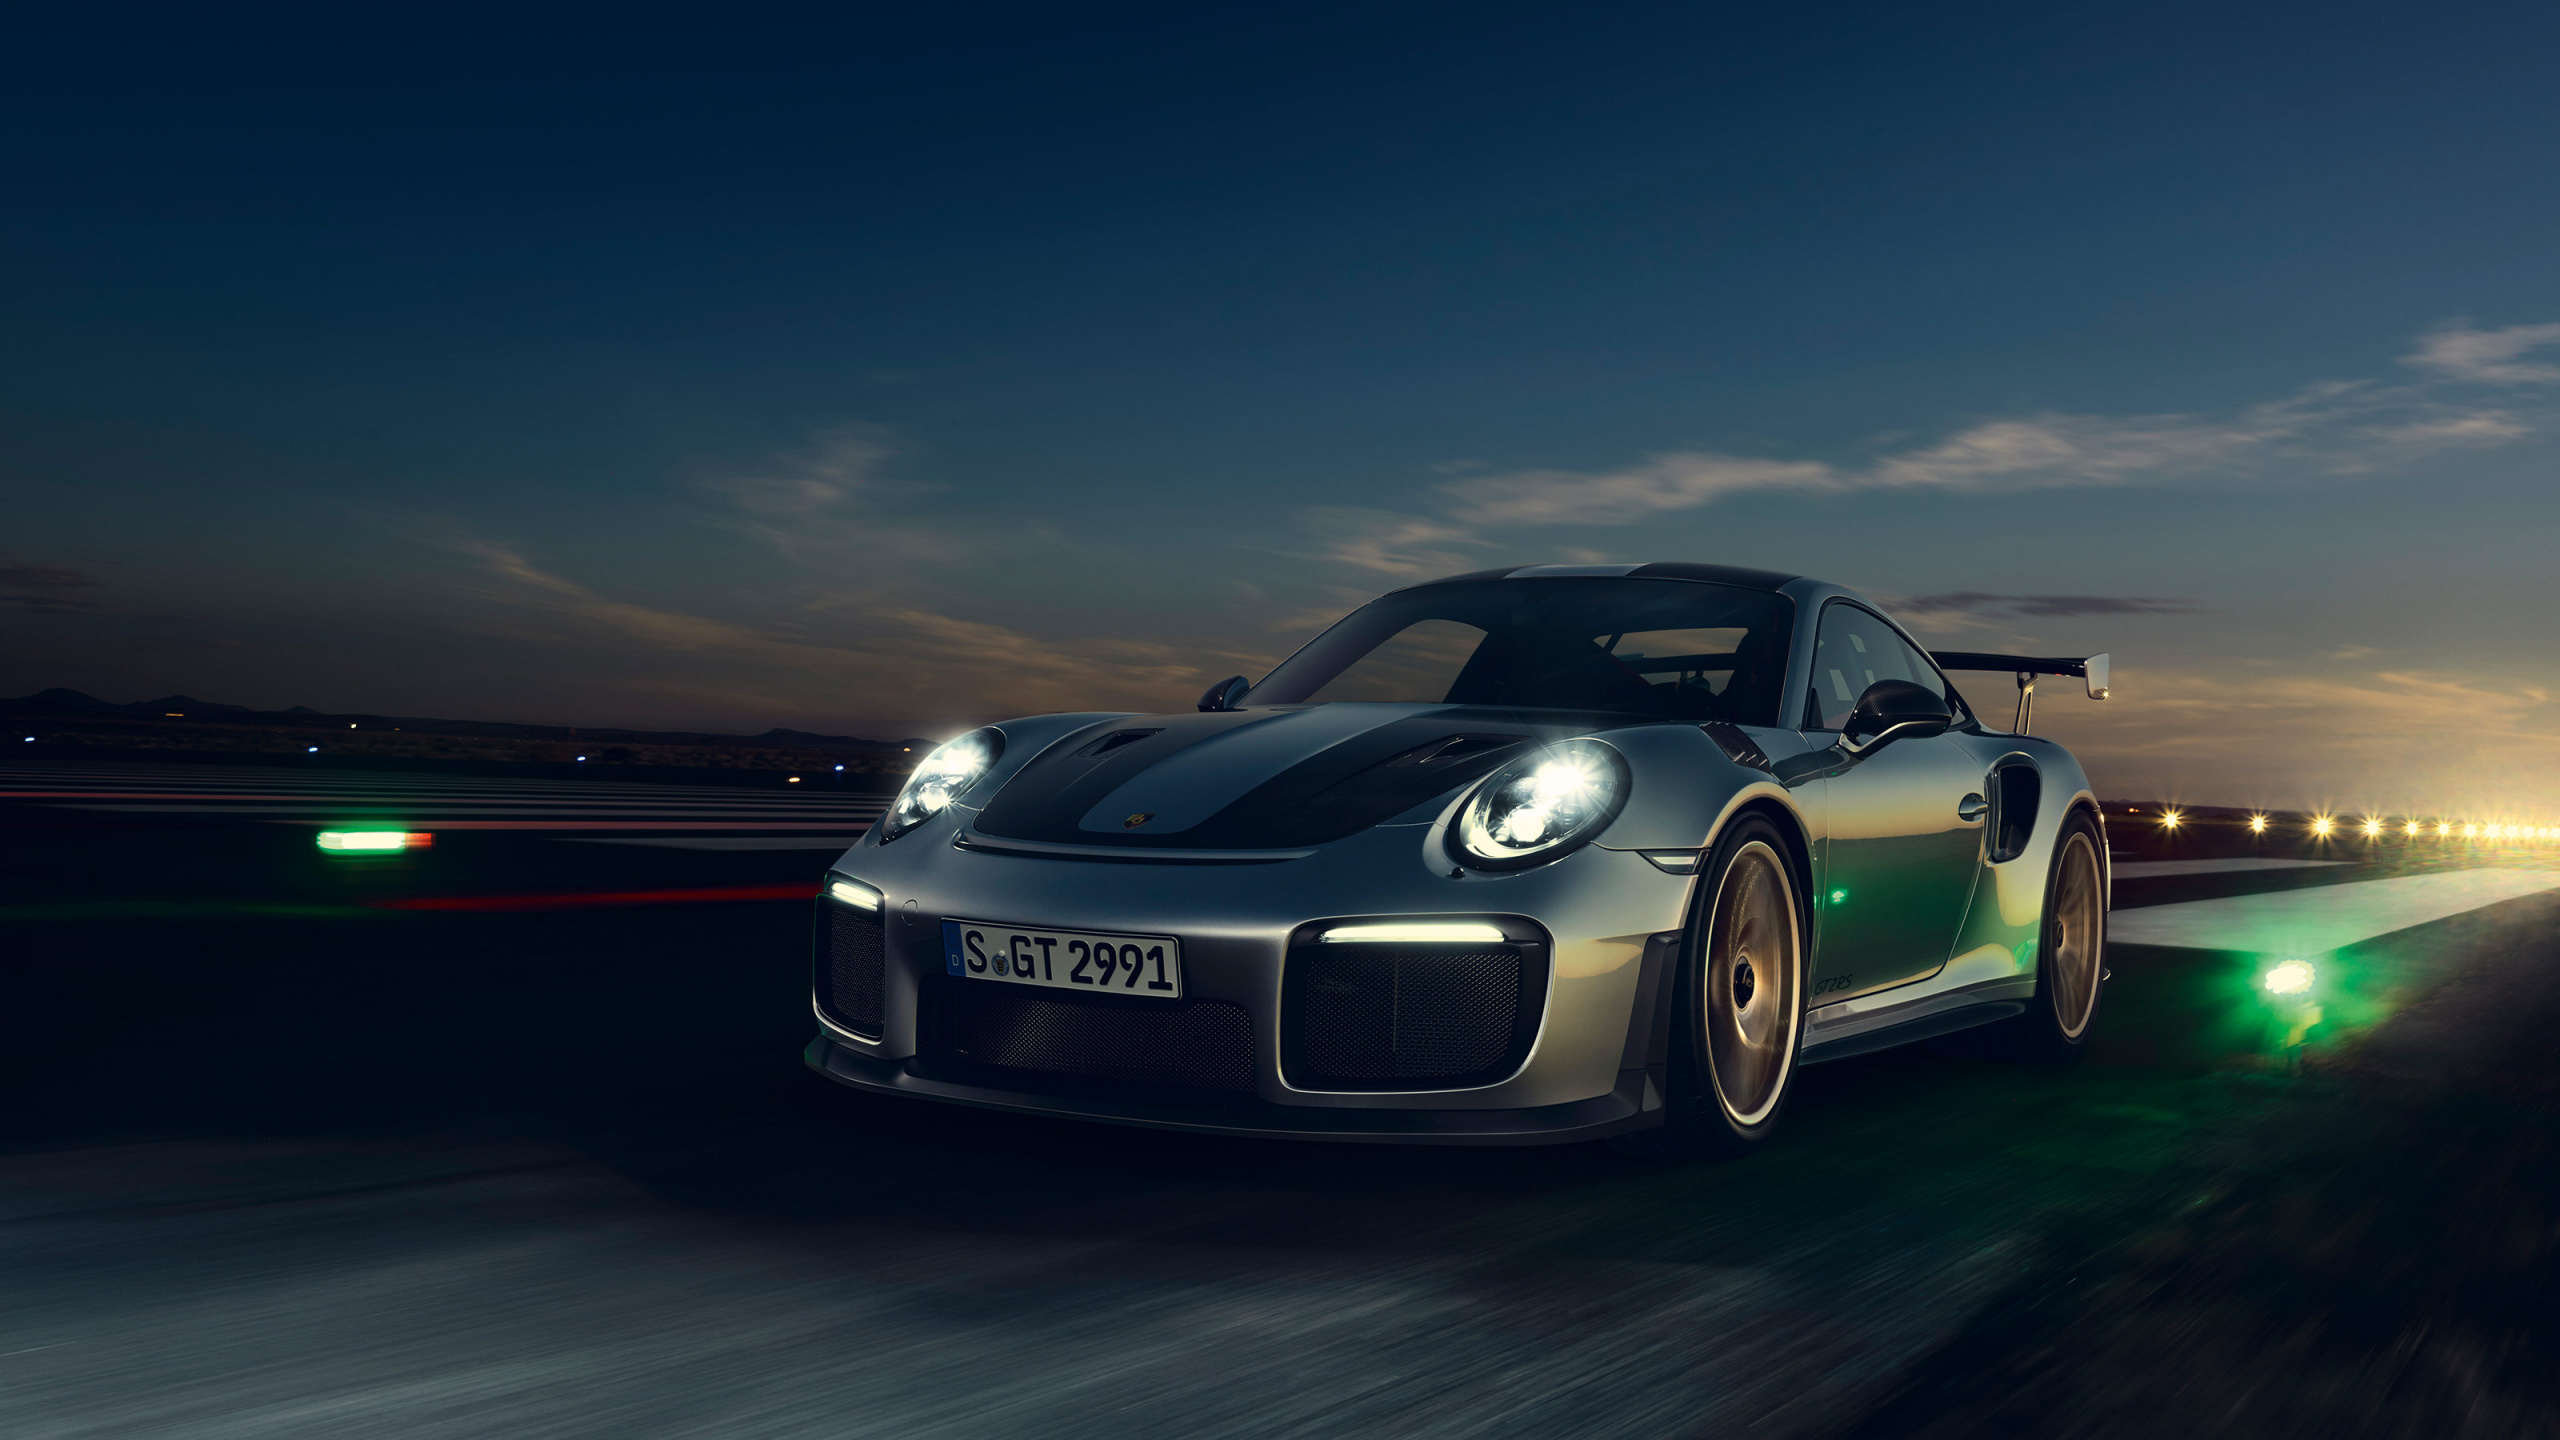 Porsche 911 Noire Sur Route Pendant la Nuit. Wallpaper in 2560x1440 Resolution